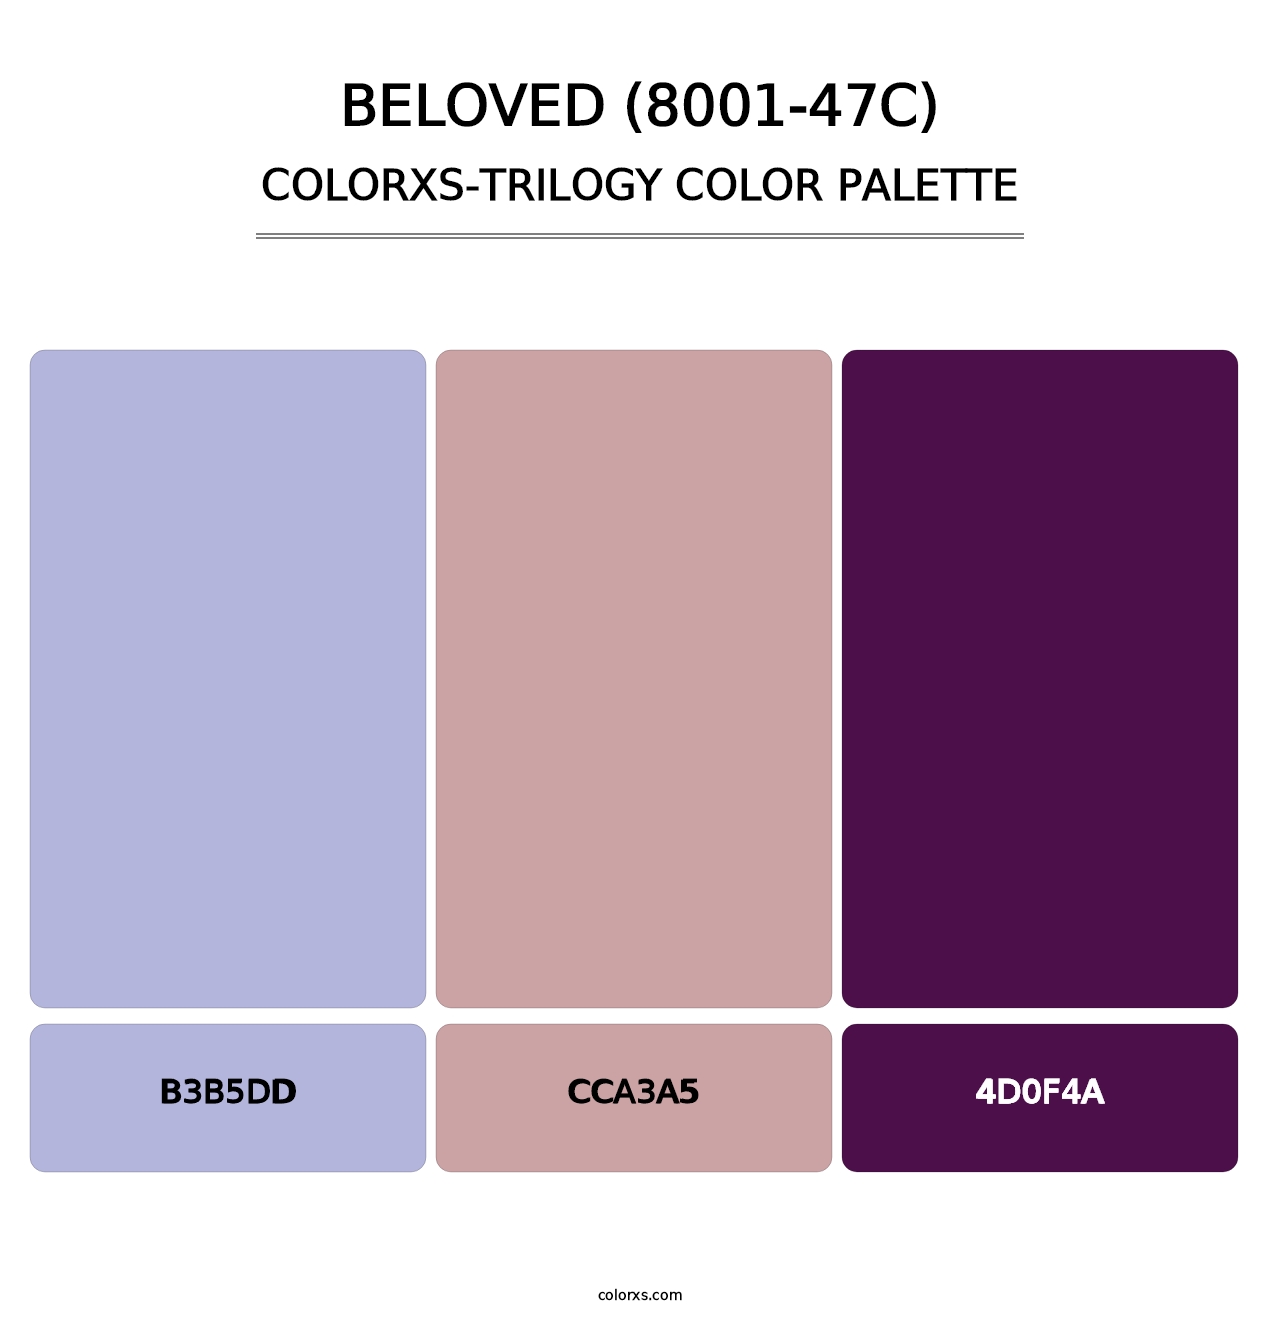 Beloved (8001-47C) - Colorxs Trilogy Palette